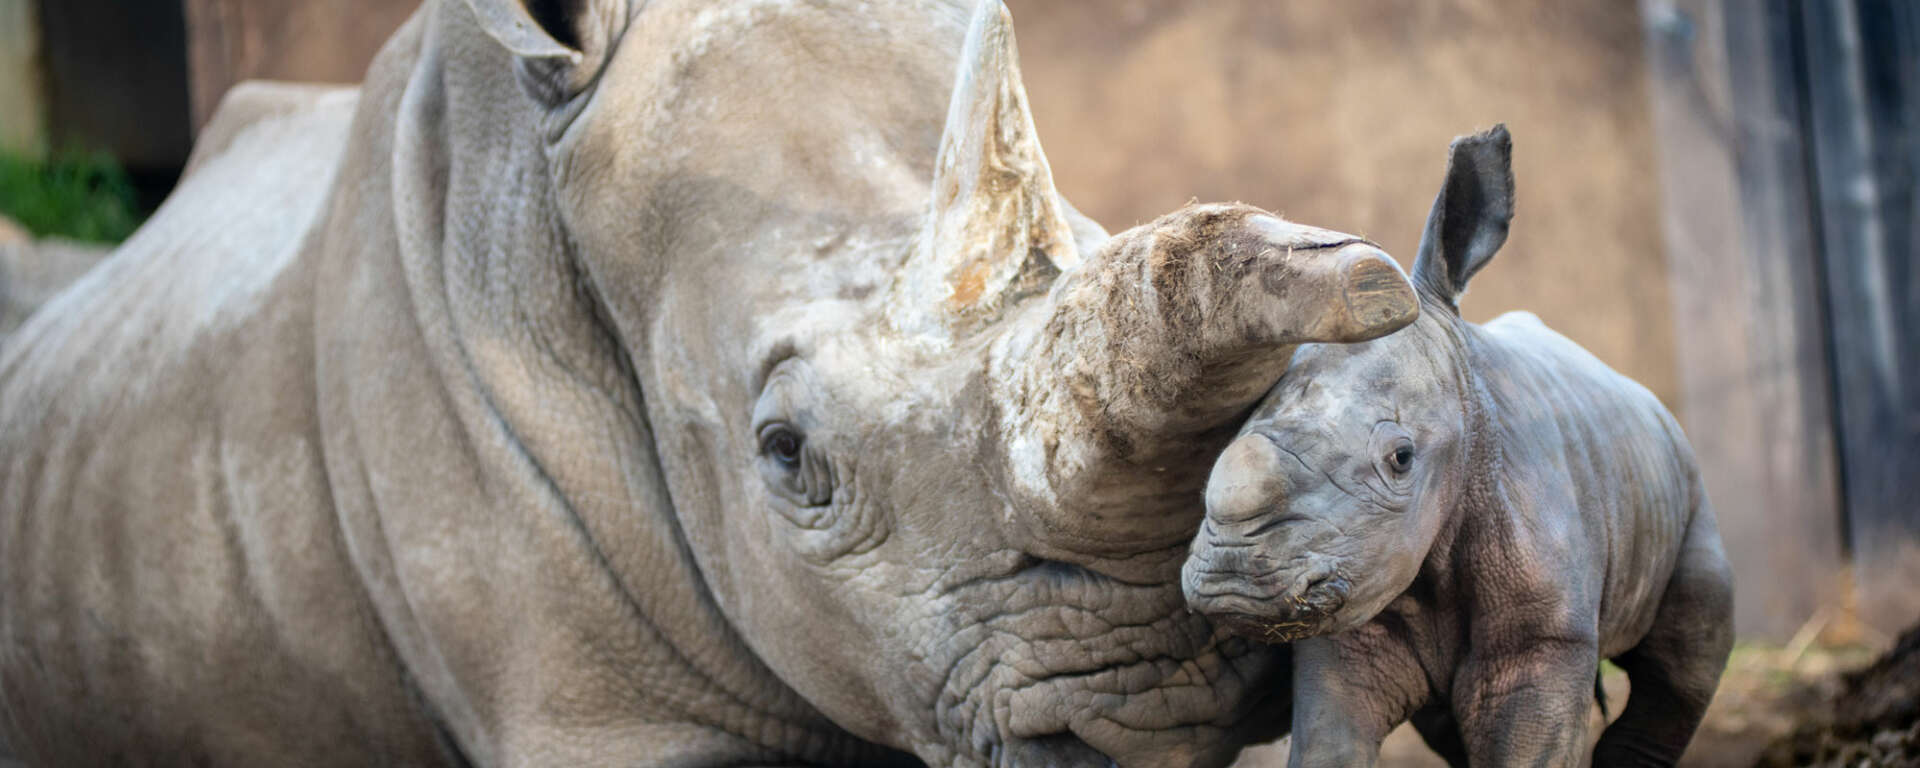 Rhino baby with mom Eesha